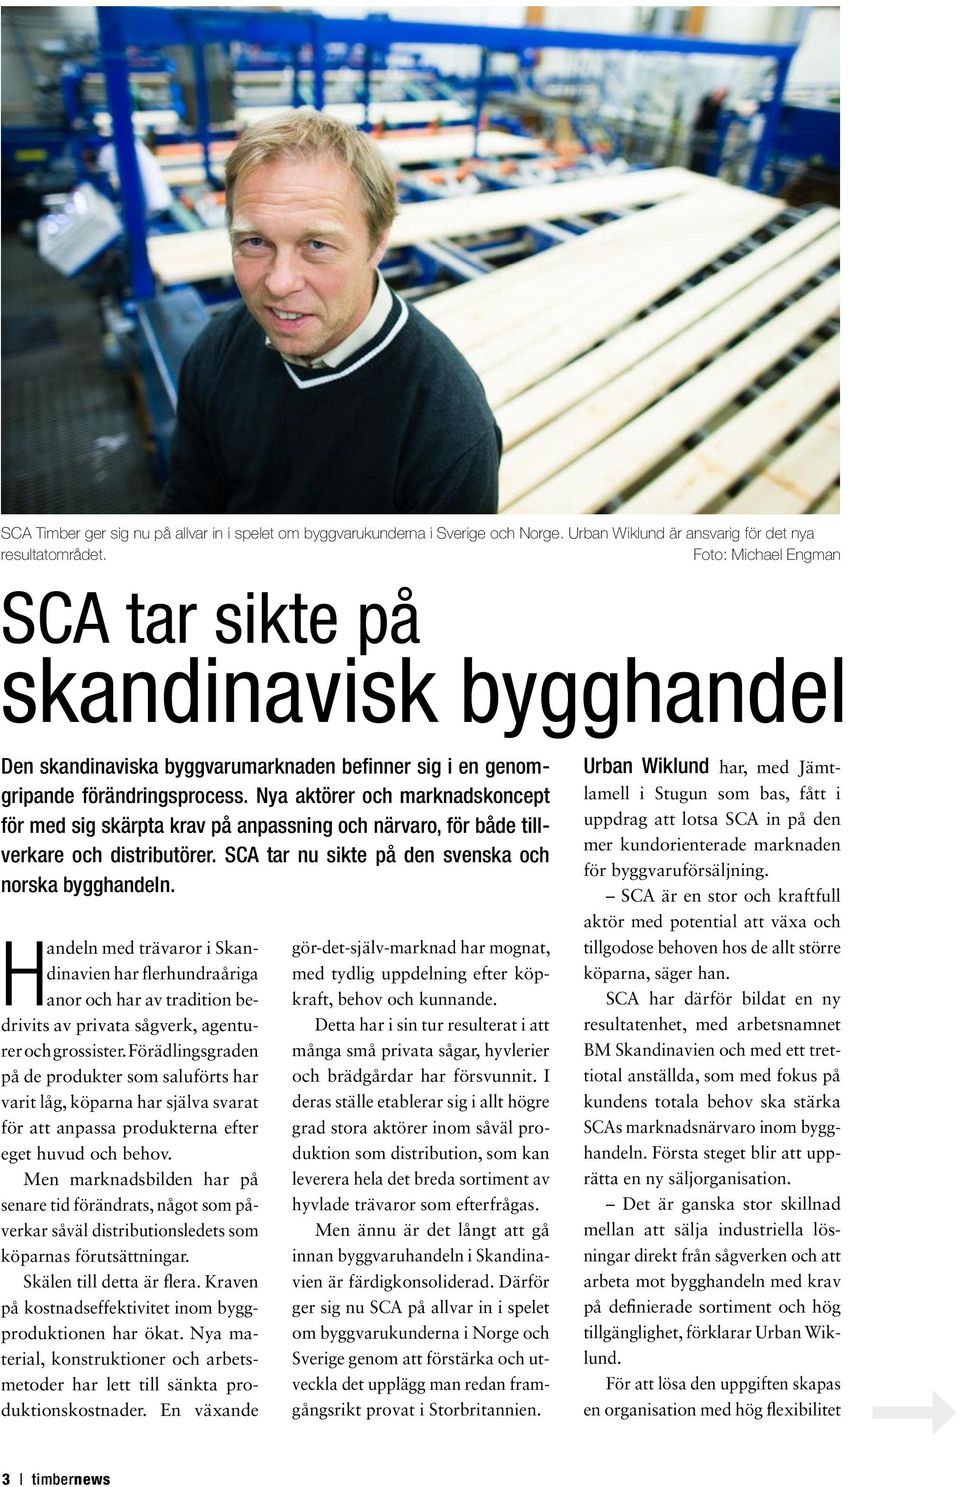 Nya aktörer och marknadskoncept för med sig skärpta krav på anpassning och närvaro, för både tillverkare och distributörer. SCA tar nu sikte på den svenska och norska bygghandeln.